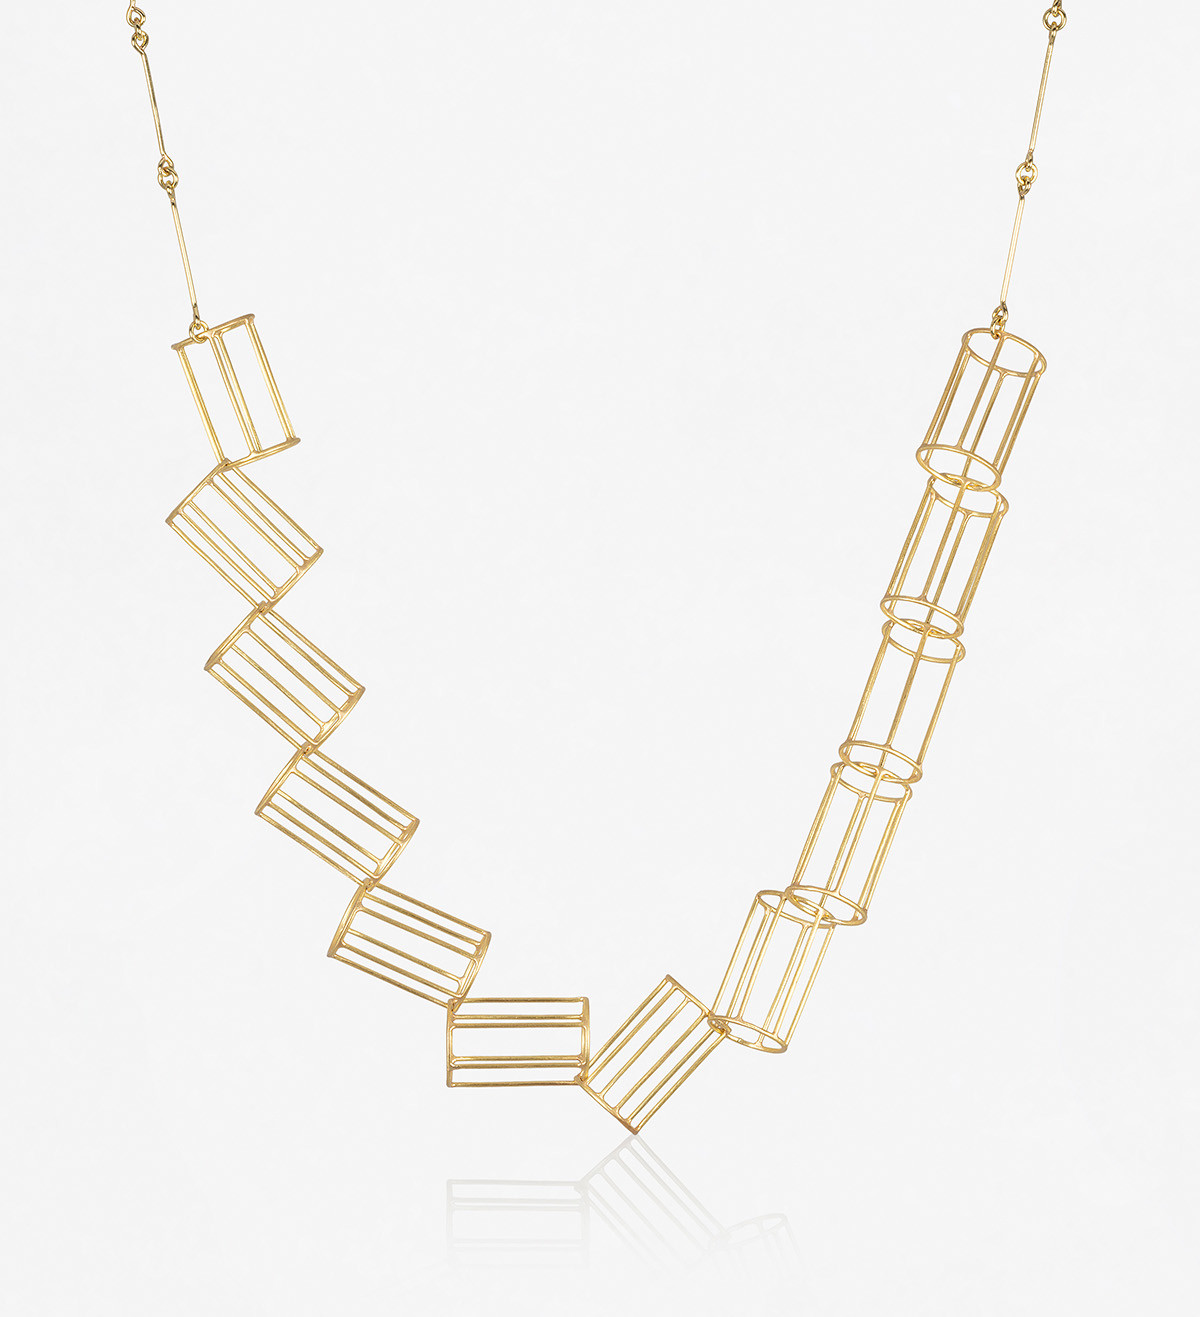 18k gold necklace Espais 12 pieces 45cm